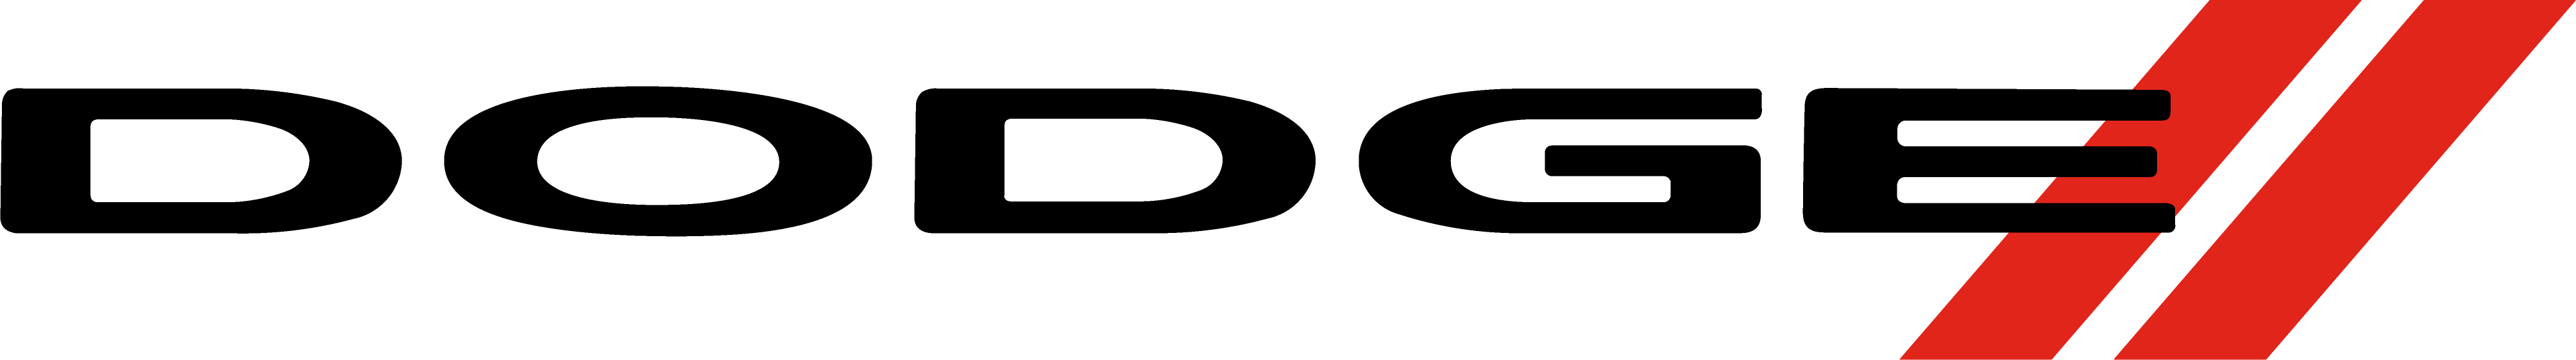 image of Dodge logo